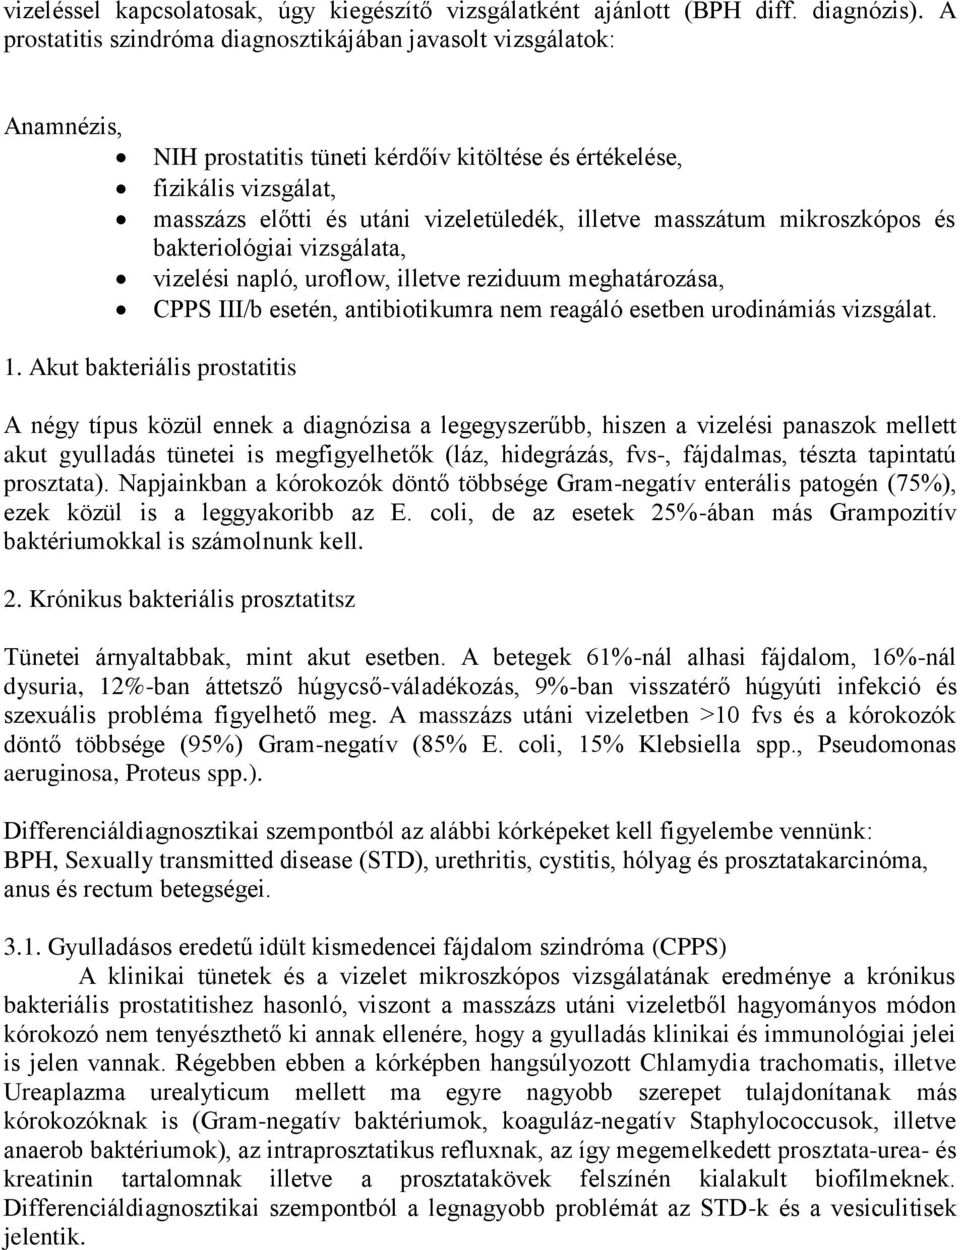 Prosztatagyulladás kezelése - Budapest Medical Orvosközpont - Krónikus prosztatitis címe